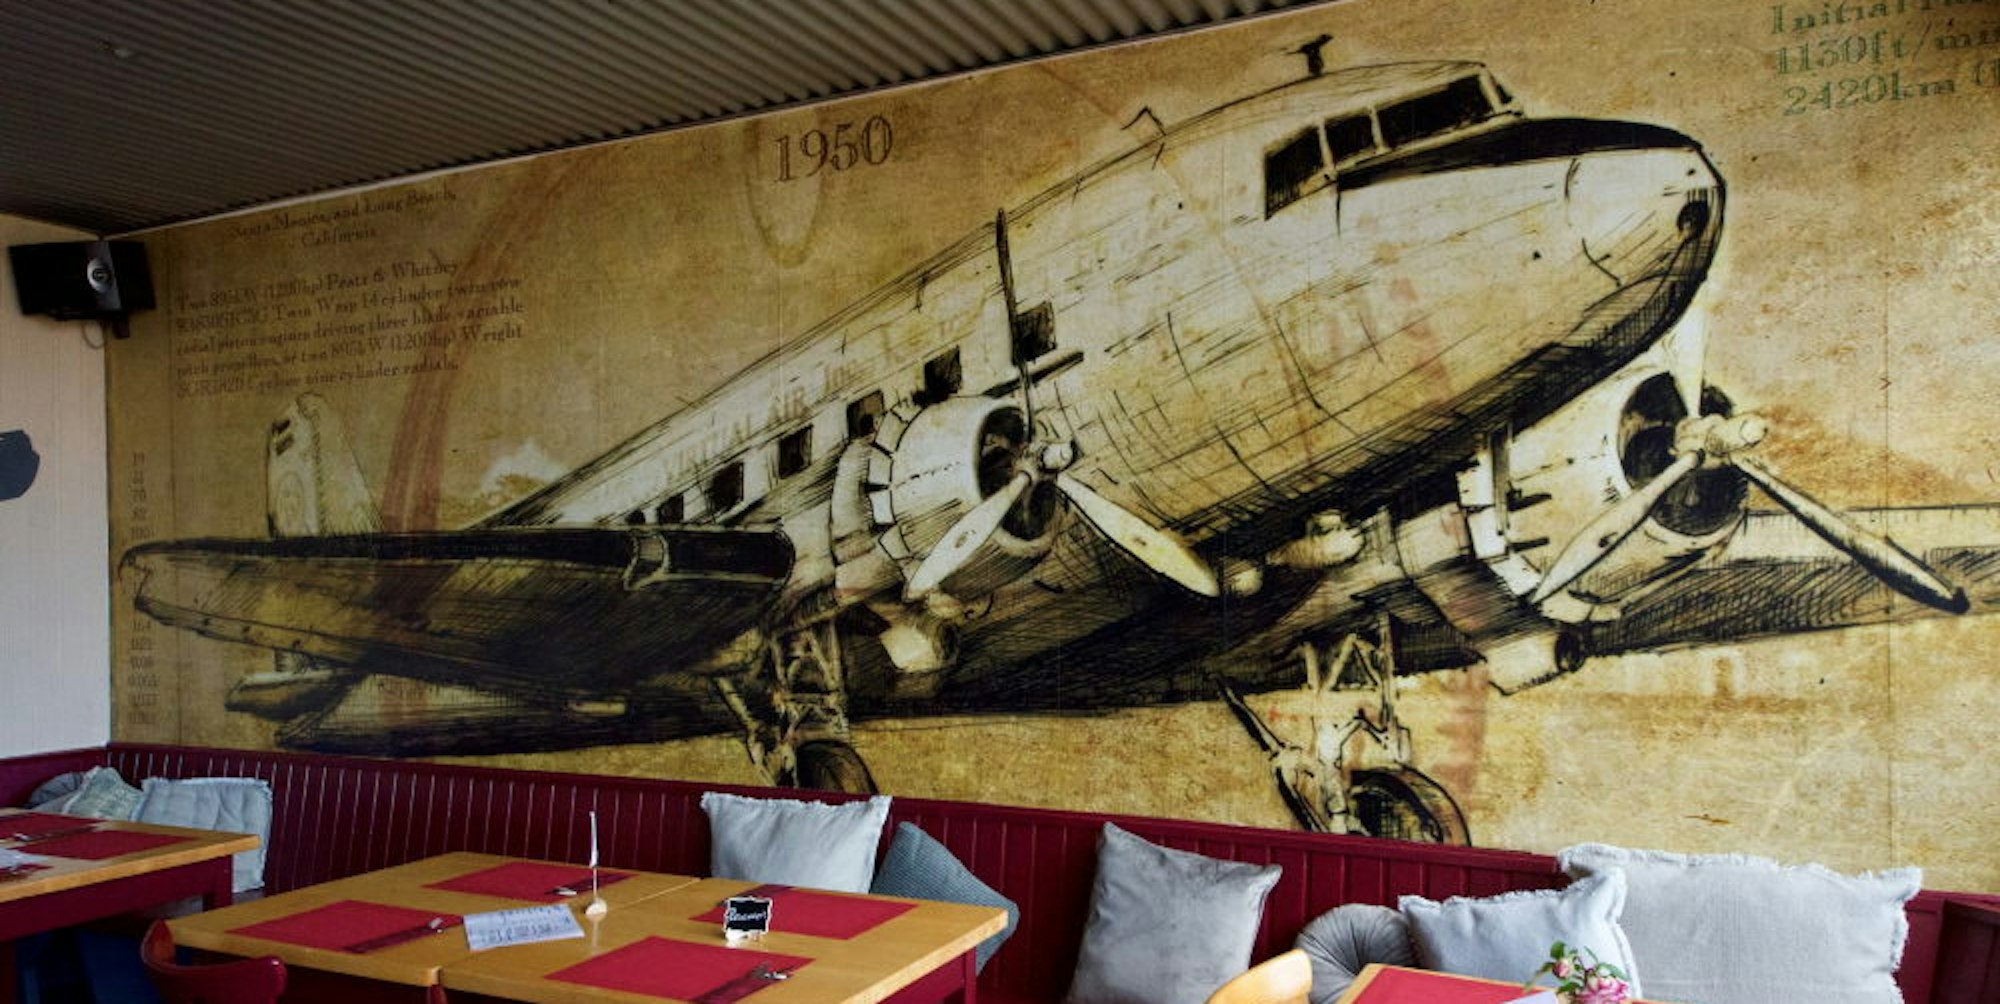 Eine Douglas DC-3 an der Rückwand des Hangars, wie der große Restaurantraum genannt wird, verweist auf das Fliegerei-Umfeld.